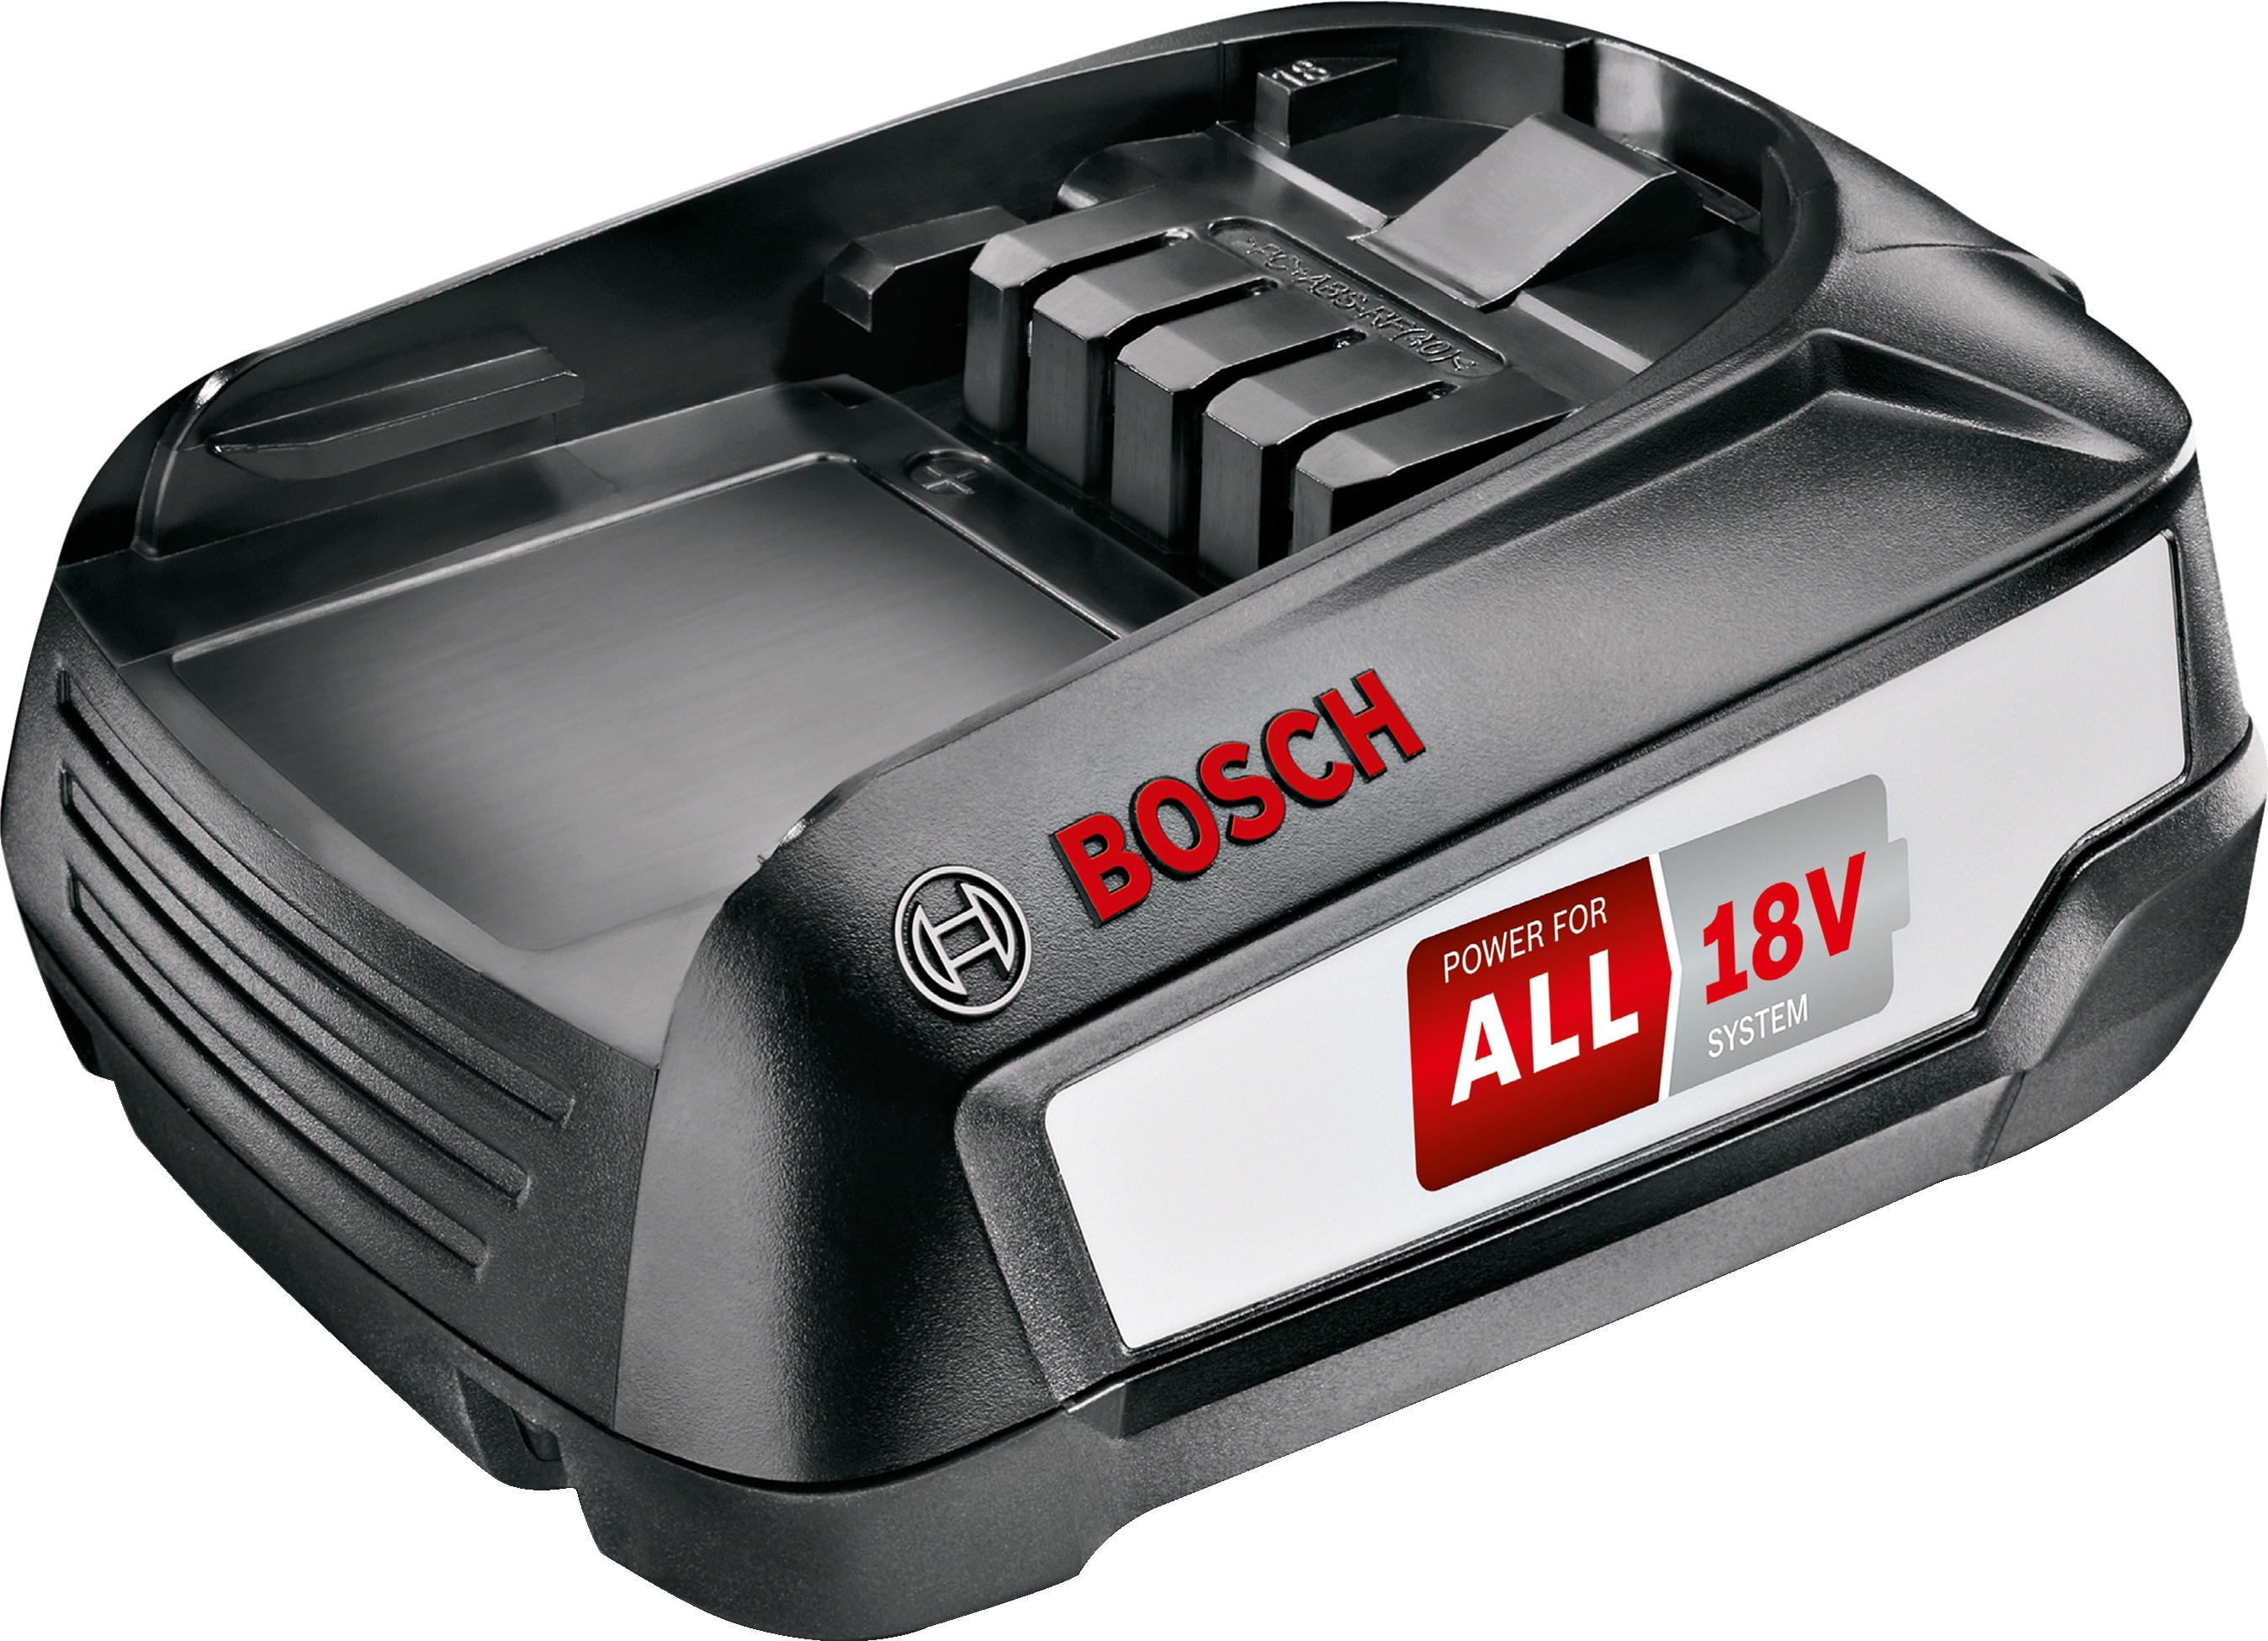 BHZUB1830 Acumulator ALL 18V 3.0Ah Bosch Bosch